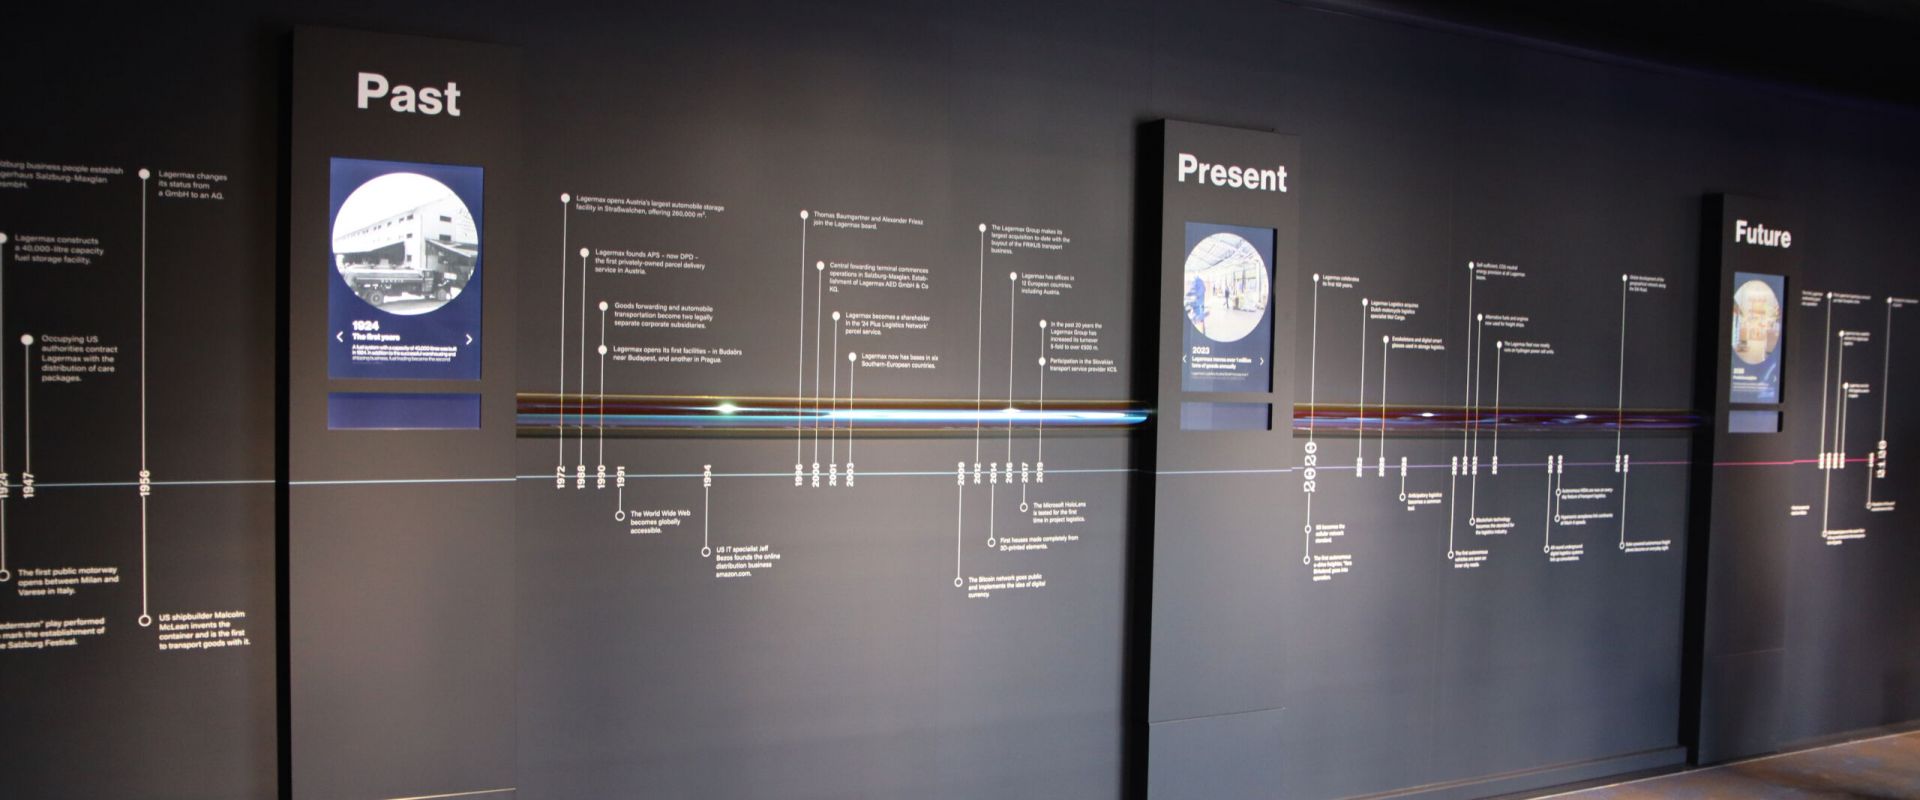 Future of Logistics - interaktive Wand zur Unternehmensgeschichte